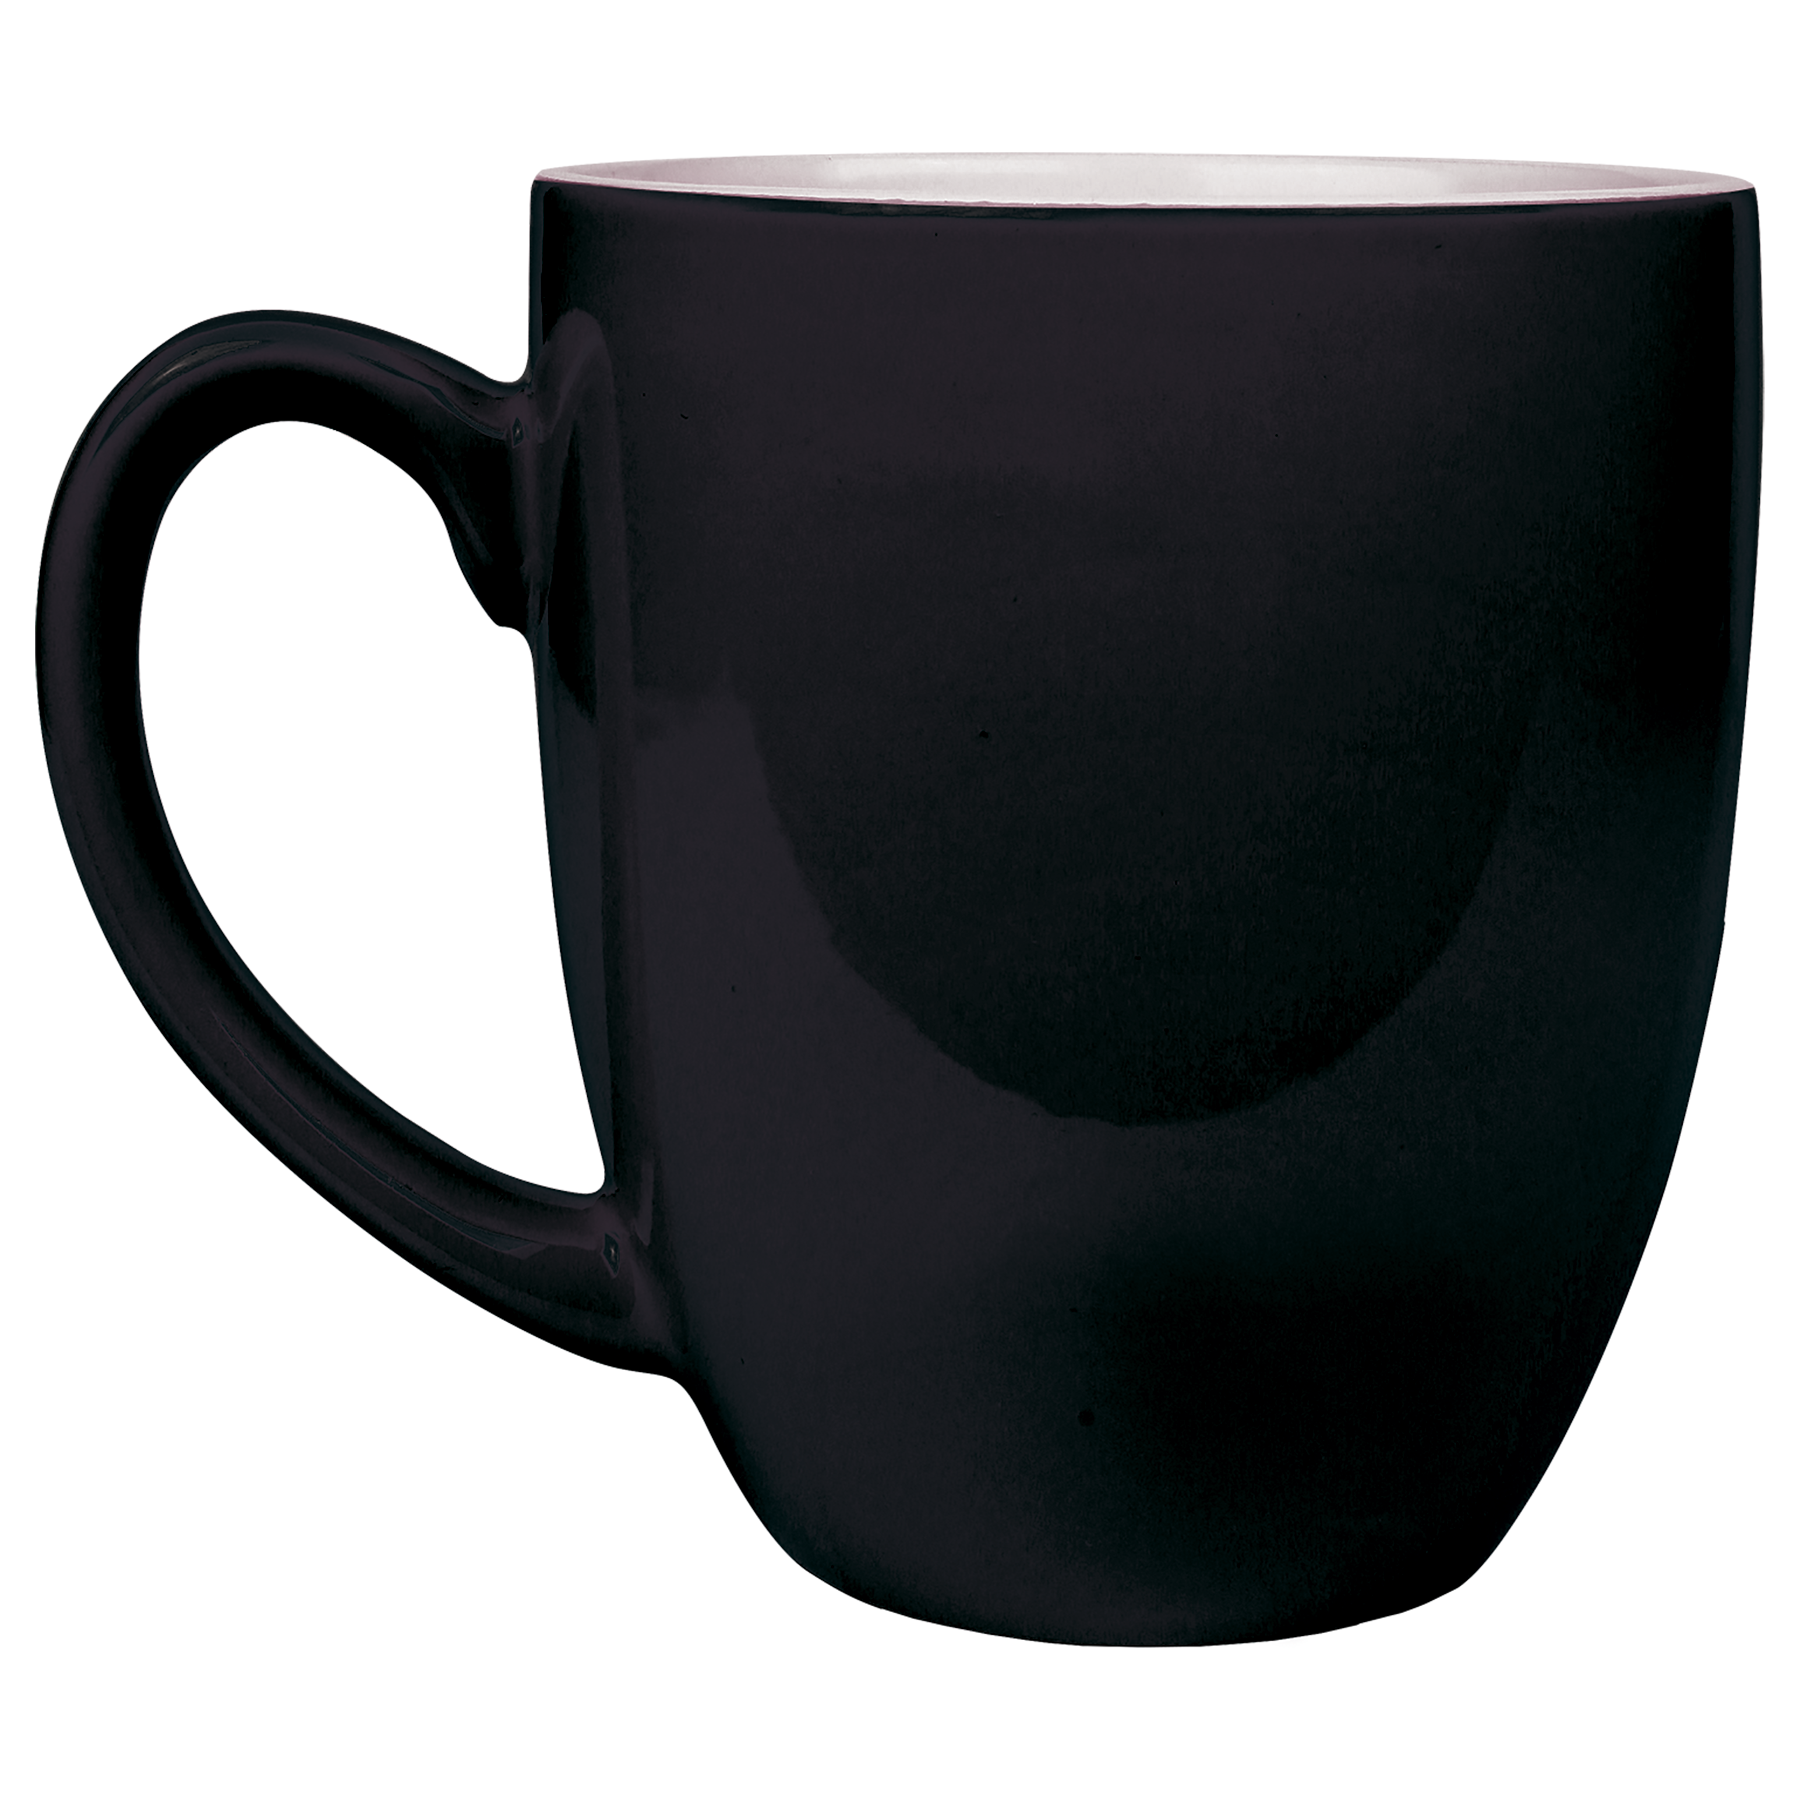 16 oz. Black Café Mug with Clover Crest – Shop 4-H